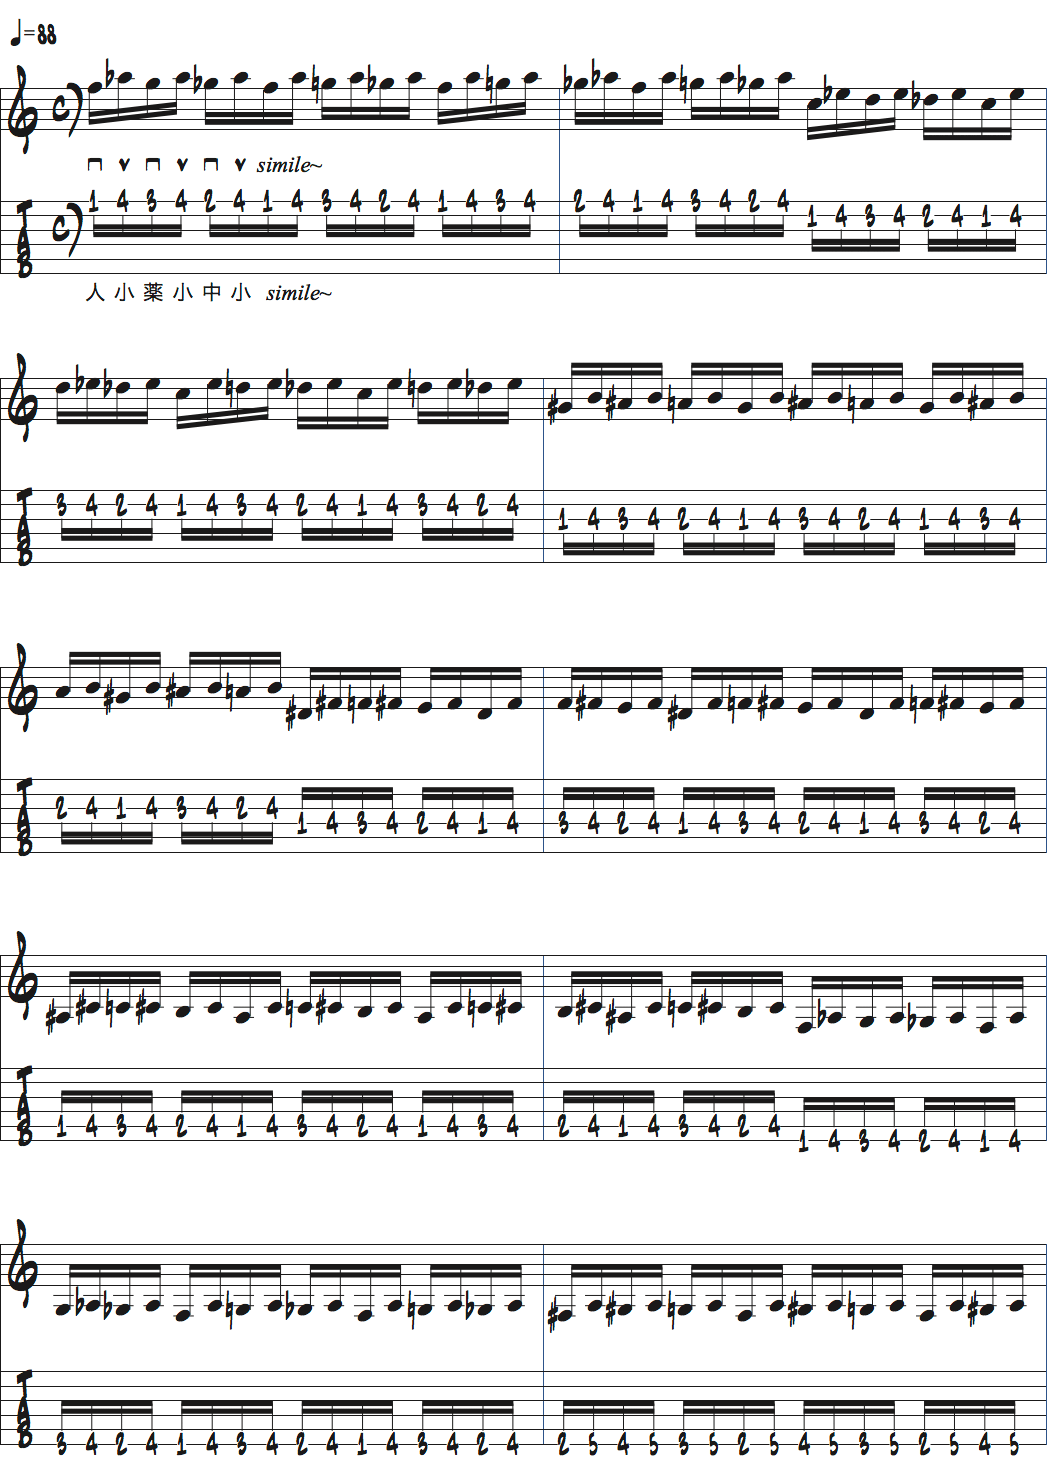 ポールジャクソンジュニアのハンドバスター楽譜1ページ目